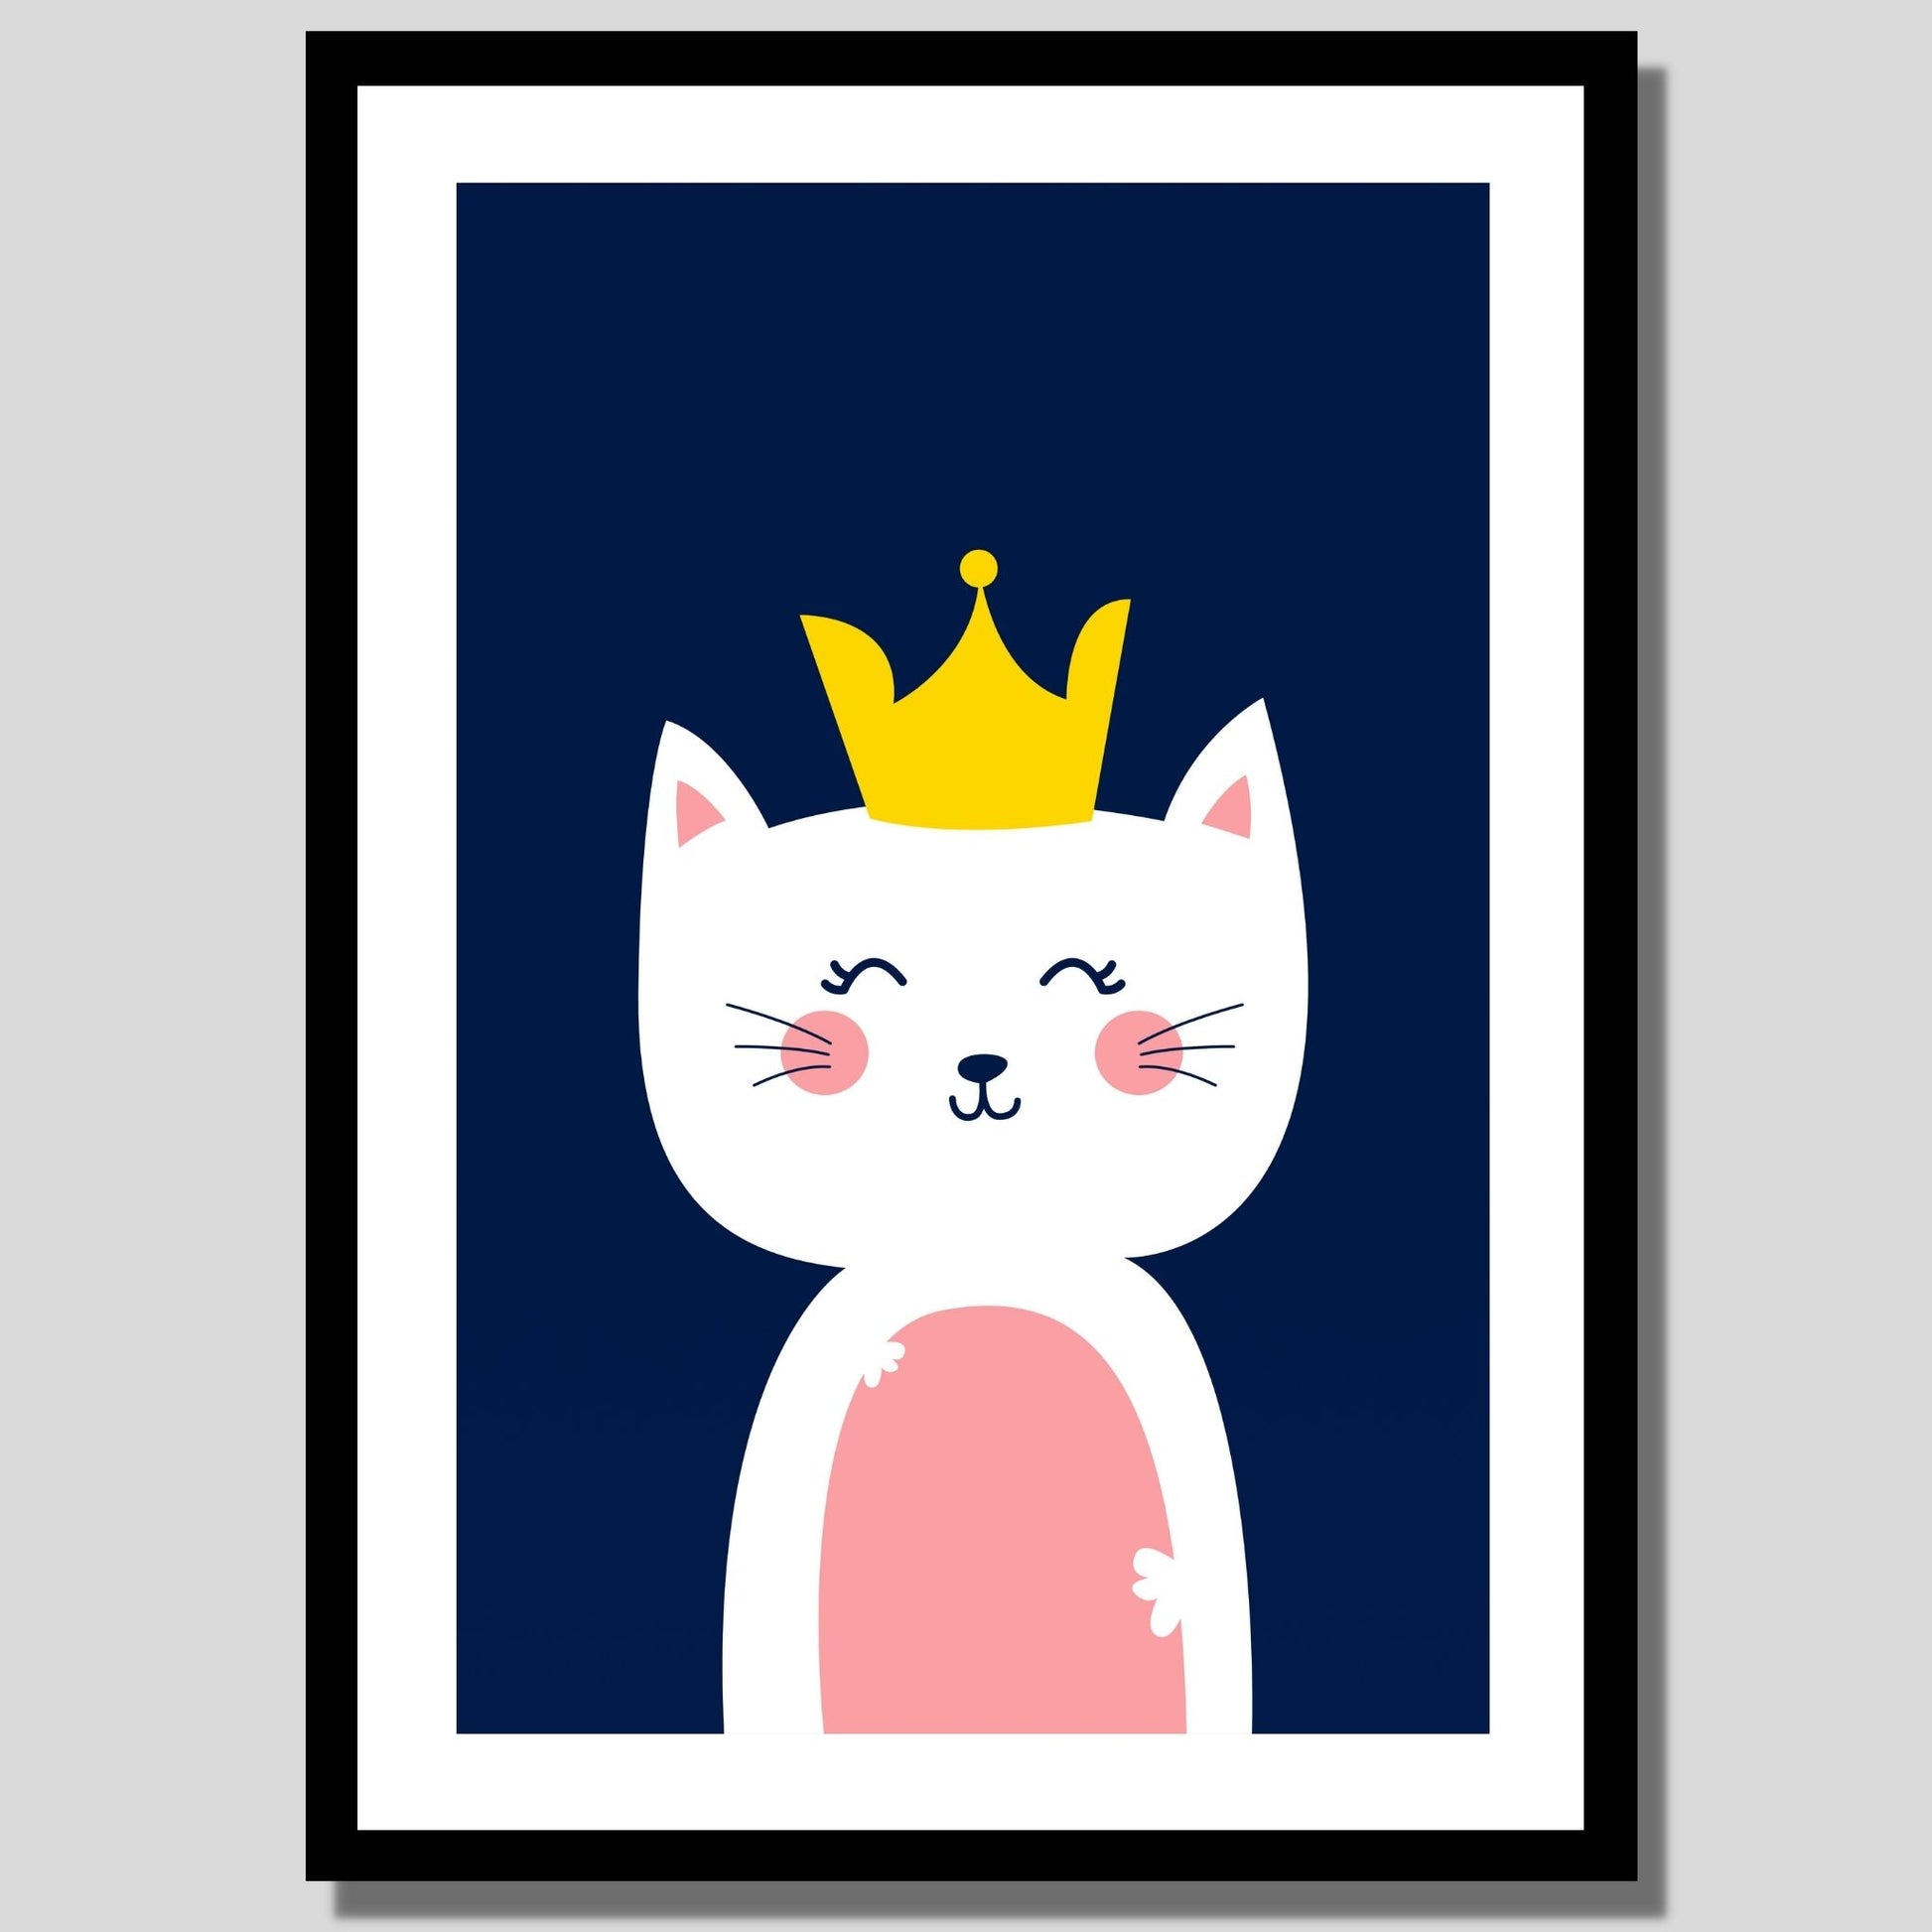 Cartoon Animal. Grafisk plakat for barnerommet. Hvit katt med krone på hode, på mørk blå bakgrunn. Illustrasjon av plakat med hvit kant rundt i sort ramme.